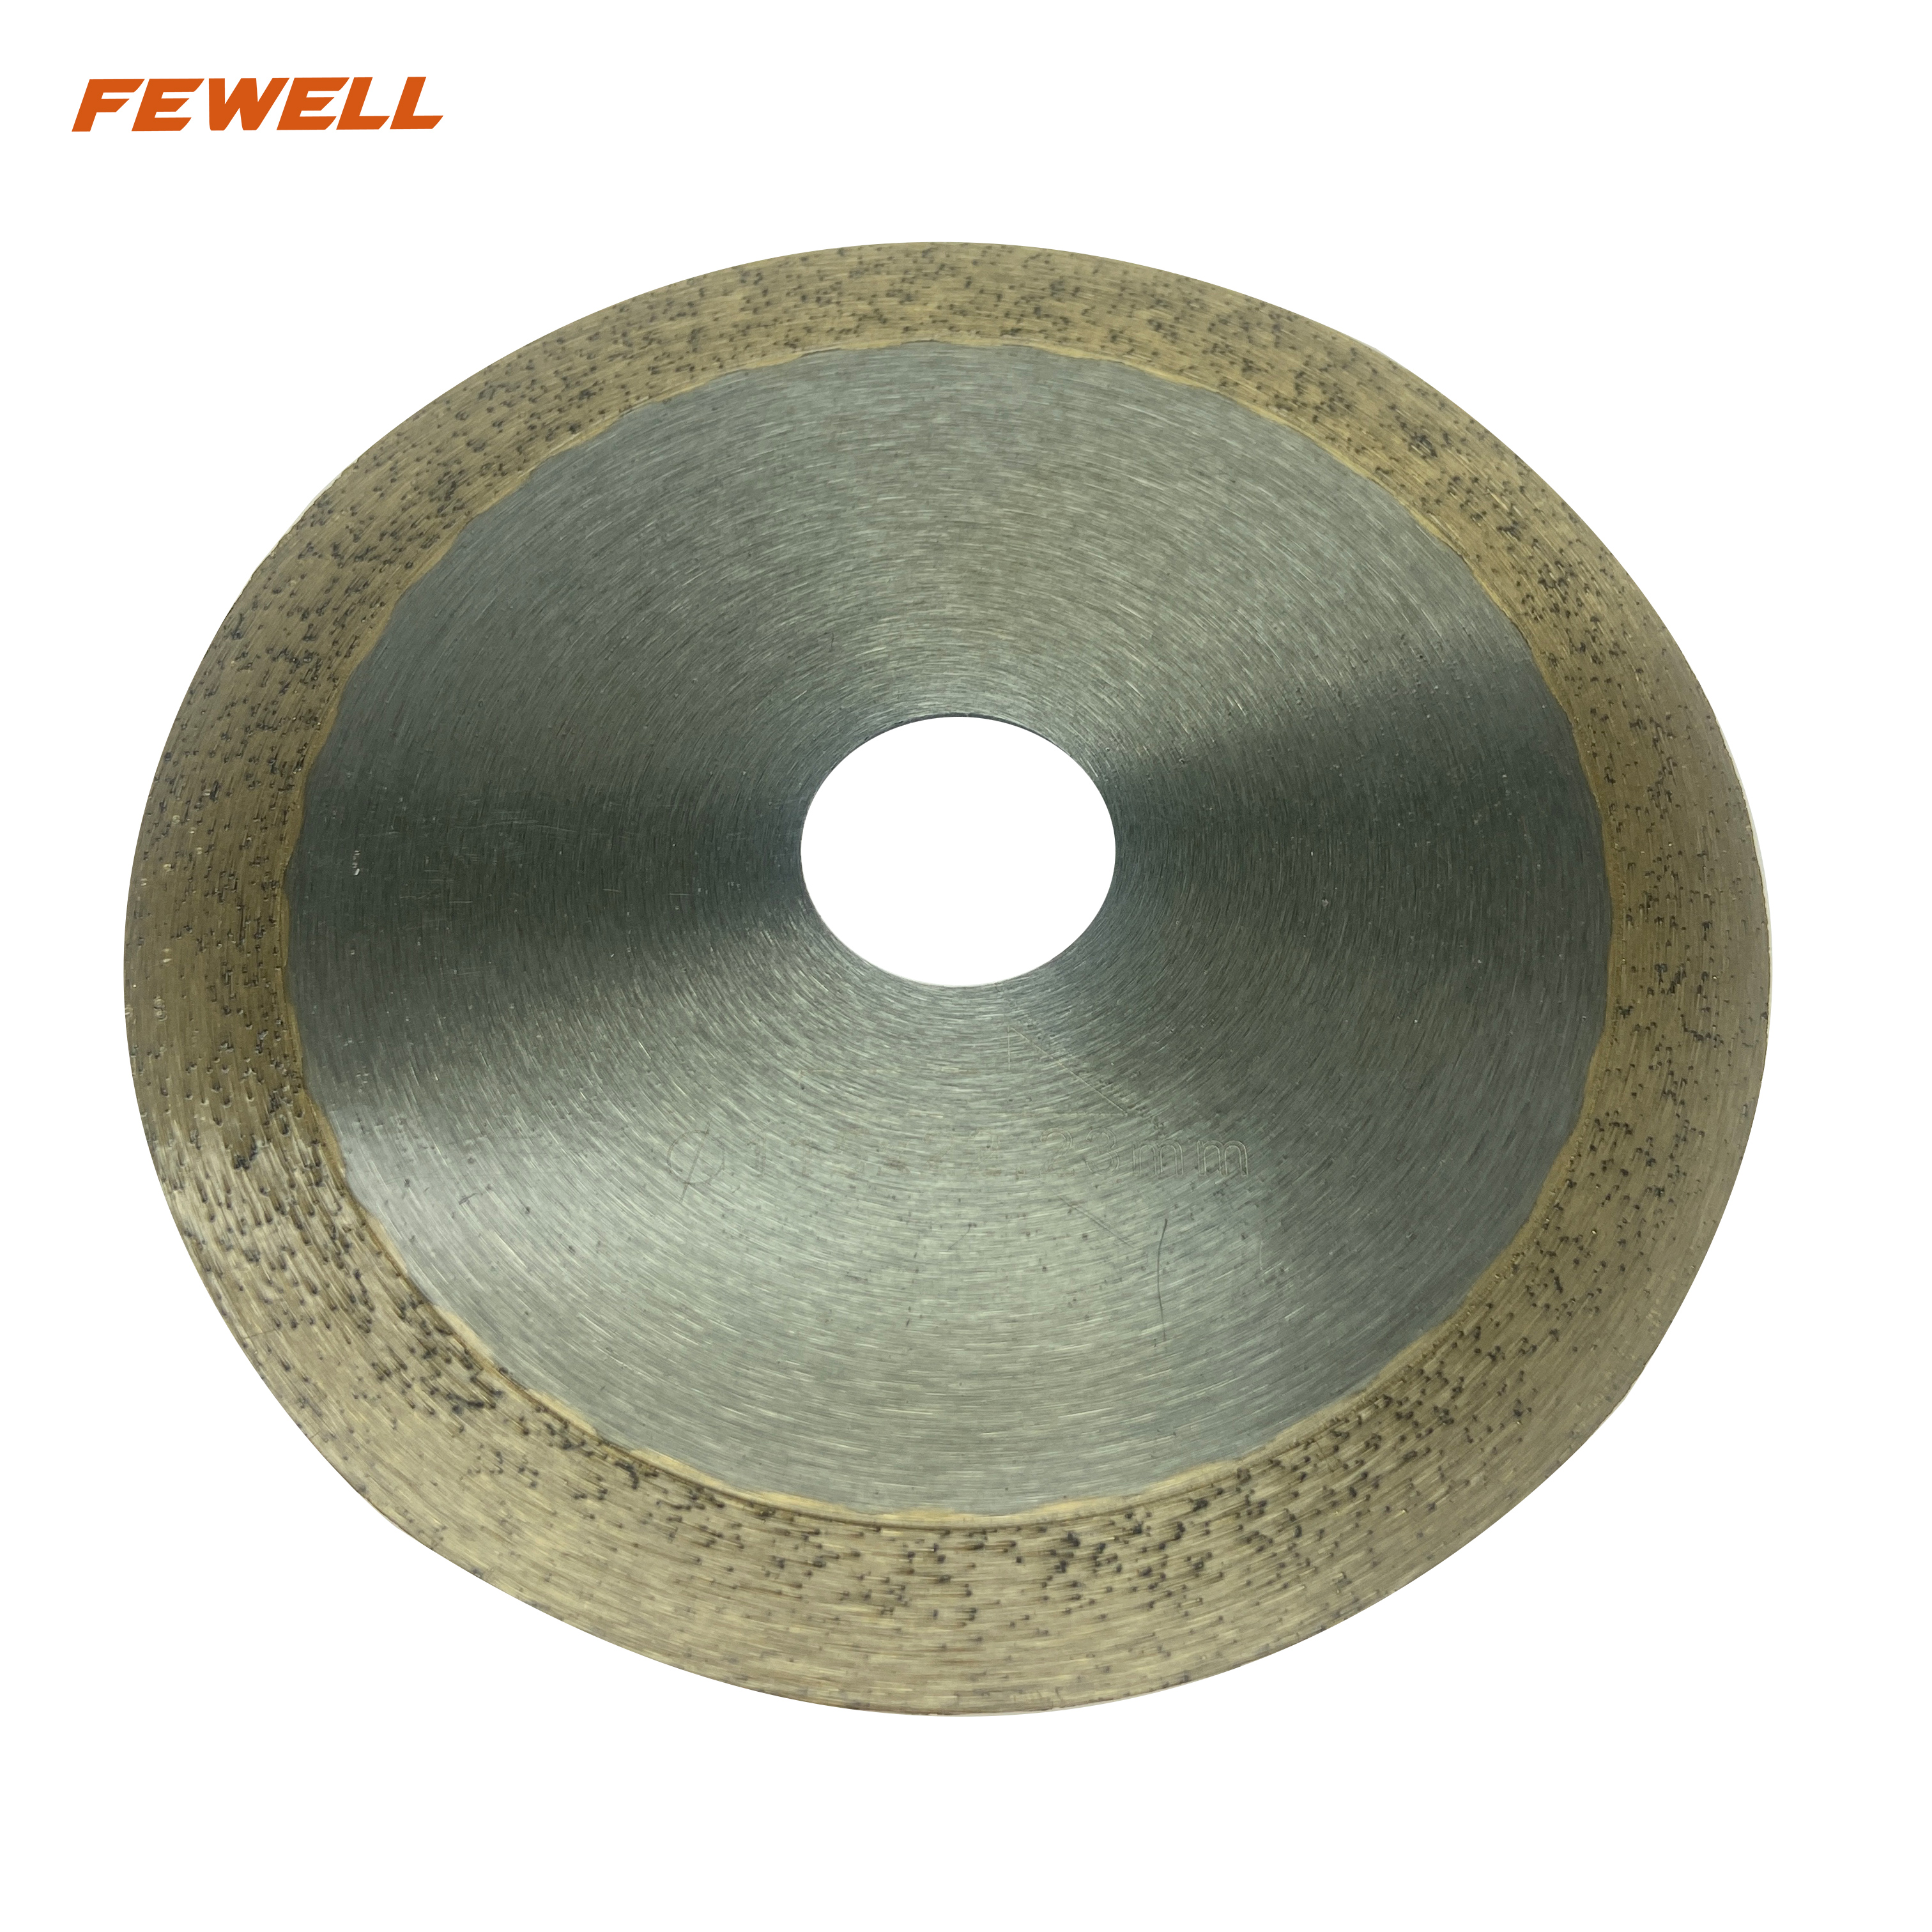 Горячепрессованный 4,5-дюймовый алмазный пильный диск со сплошным ободом 115*10*22,23 мм для влажной резки керамики, плитки, фарфора